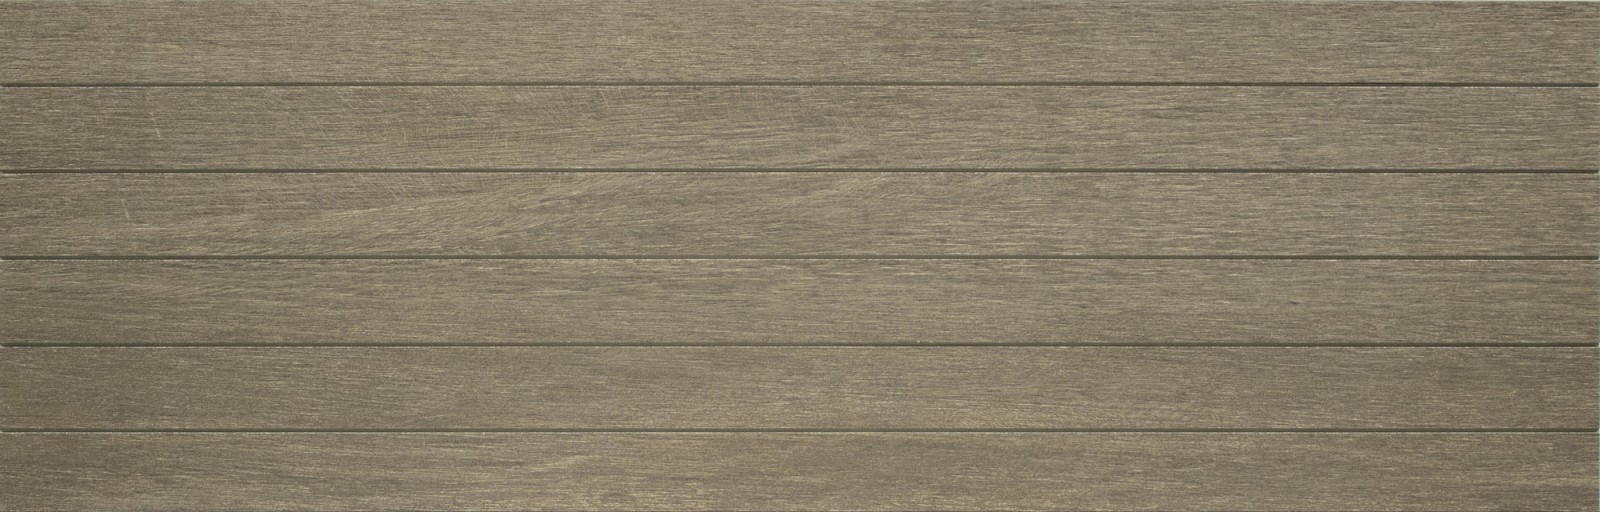 Керамическая Плитка Peronda D.lenk walnut stripes as/24x75/c